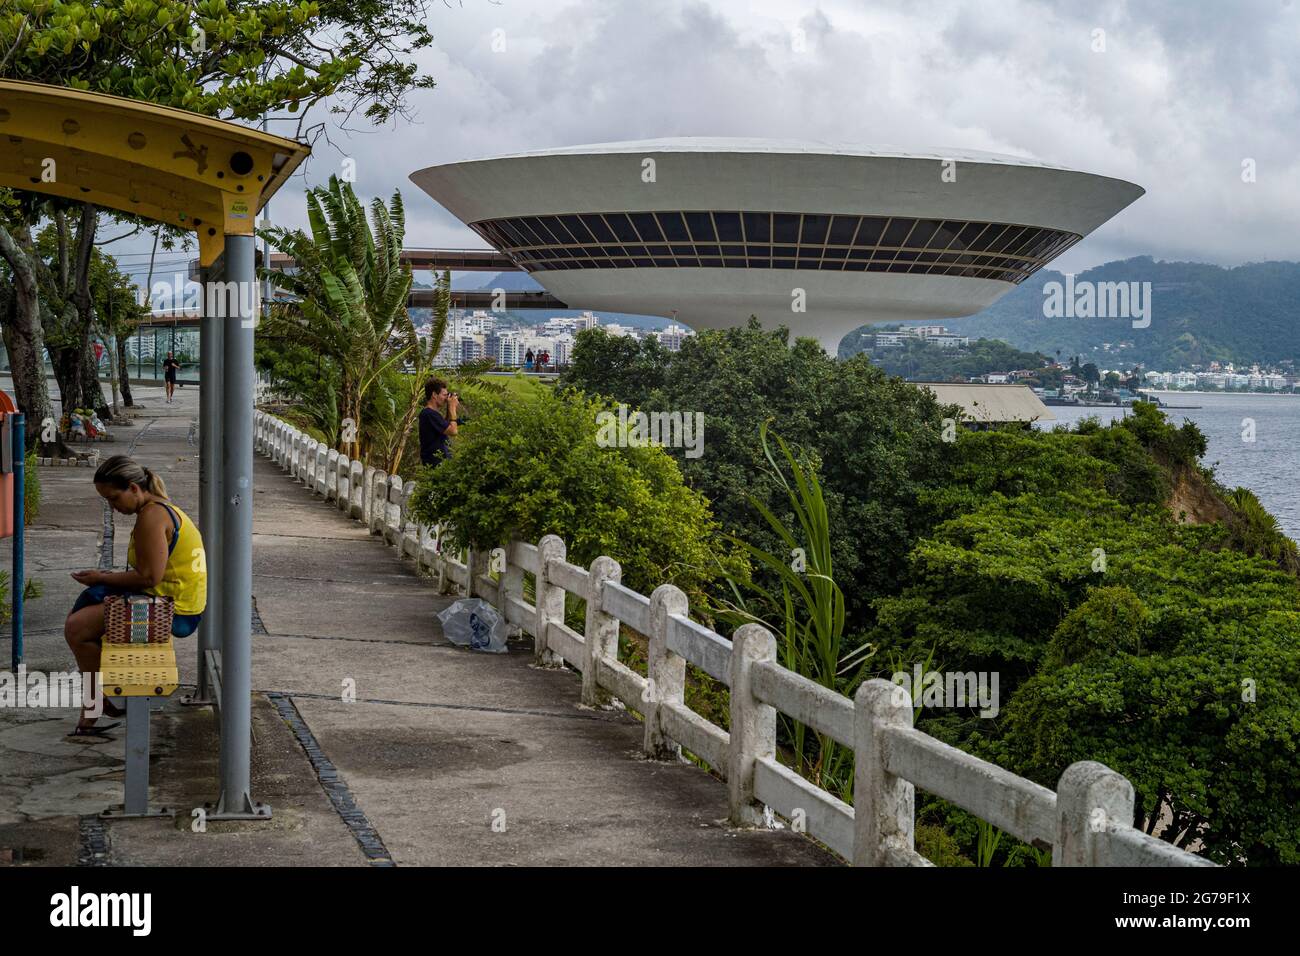 MAC Niteroi. Musée d'Art contemporain de Niteroi. L'architecte Oscar Niemeyer. Niteroi ville, Etat de Rio de Janeiro / Brésil Amérique du Sud Banque D'Images